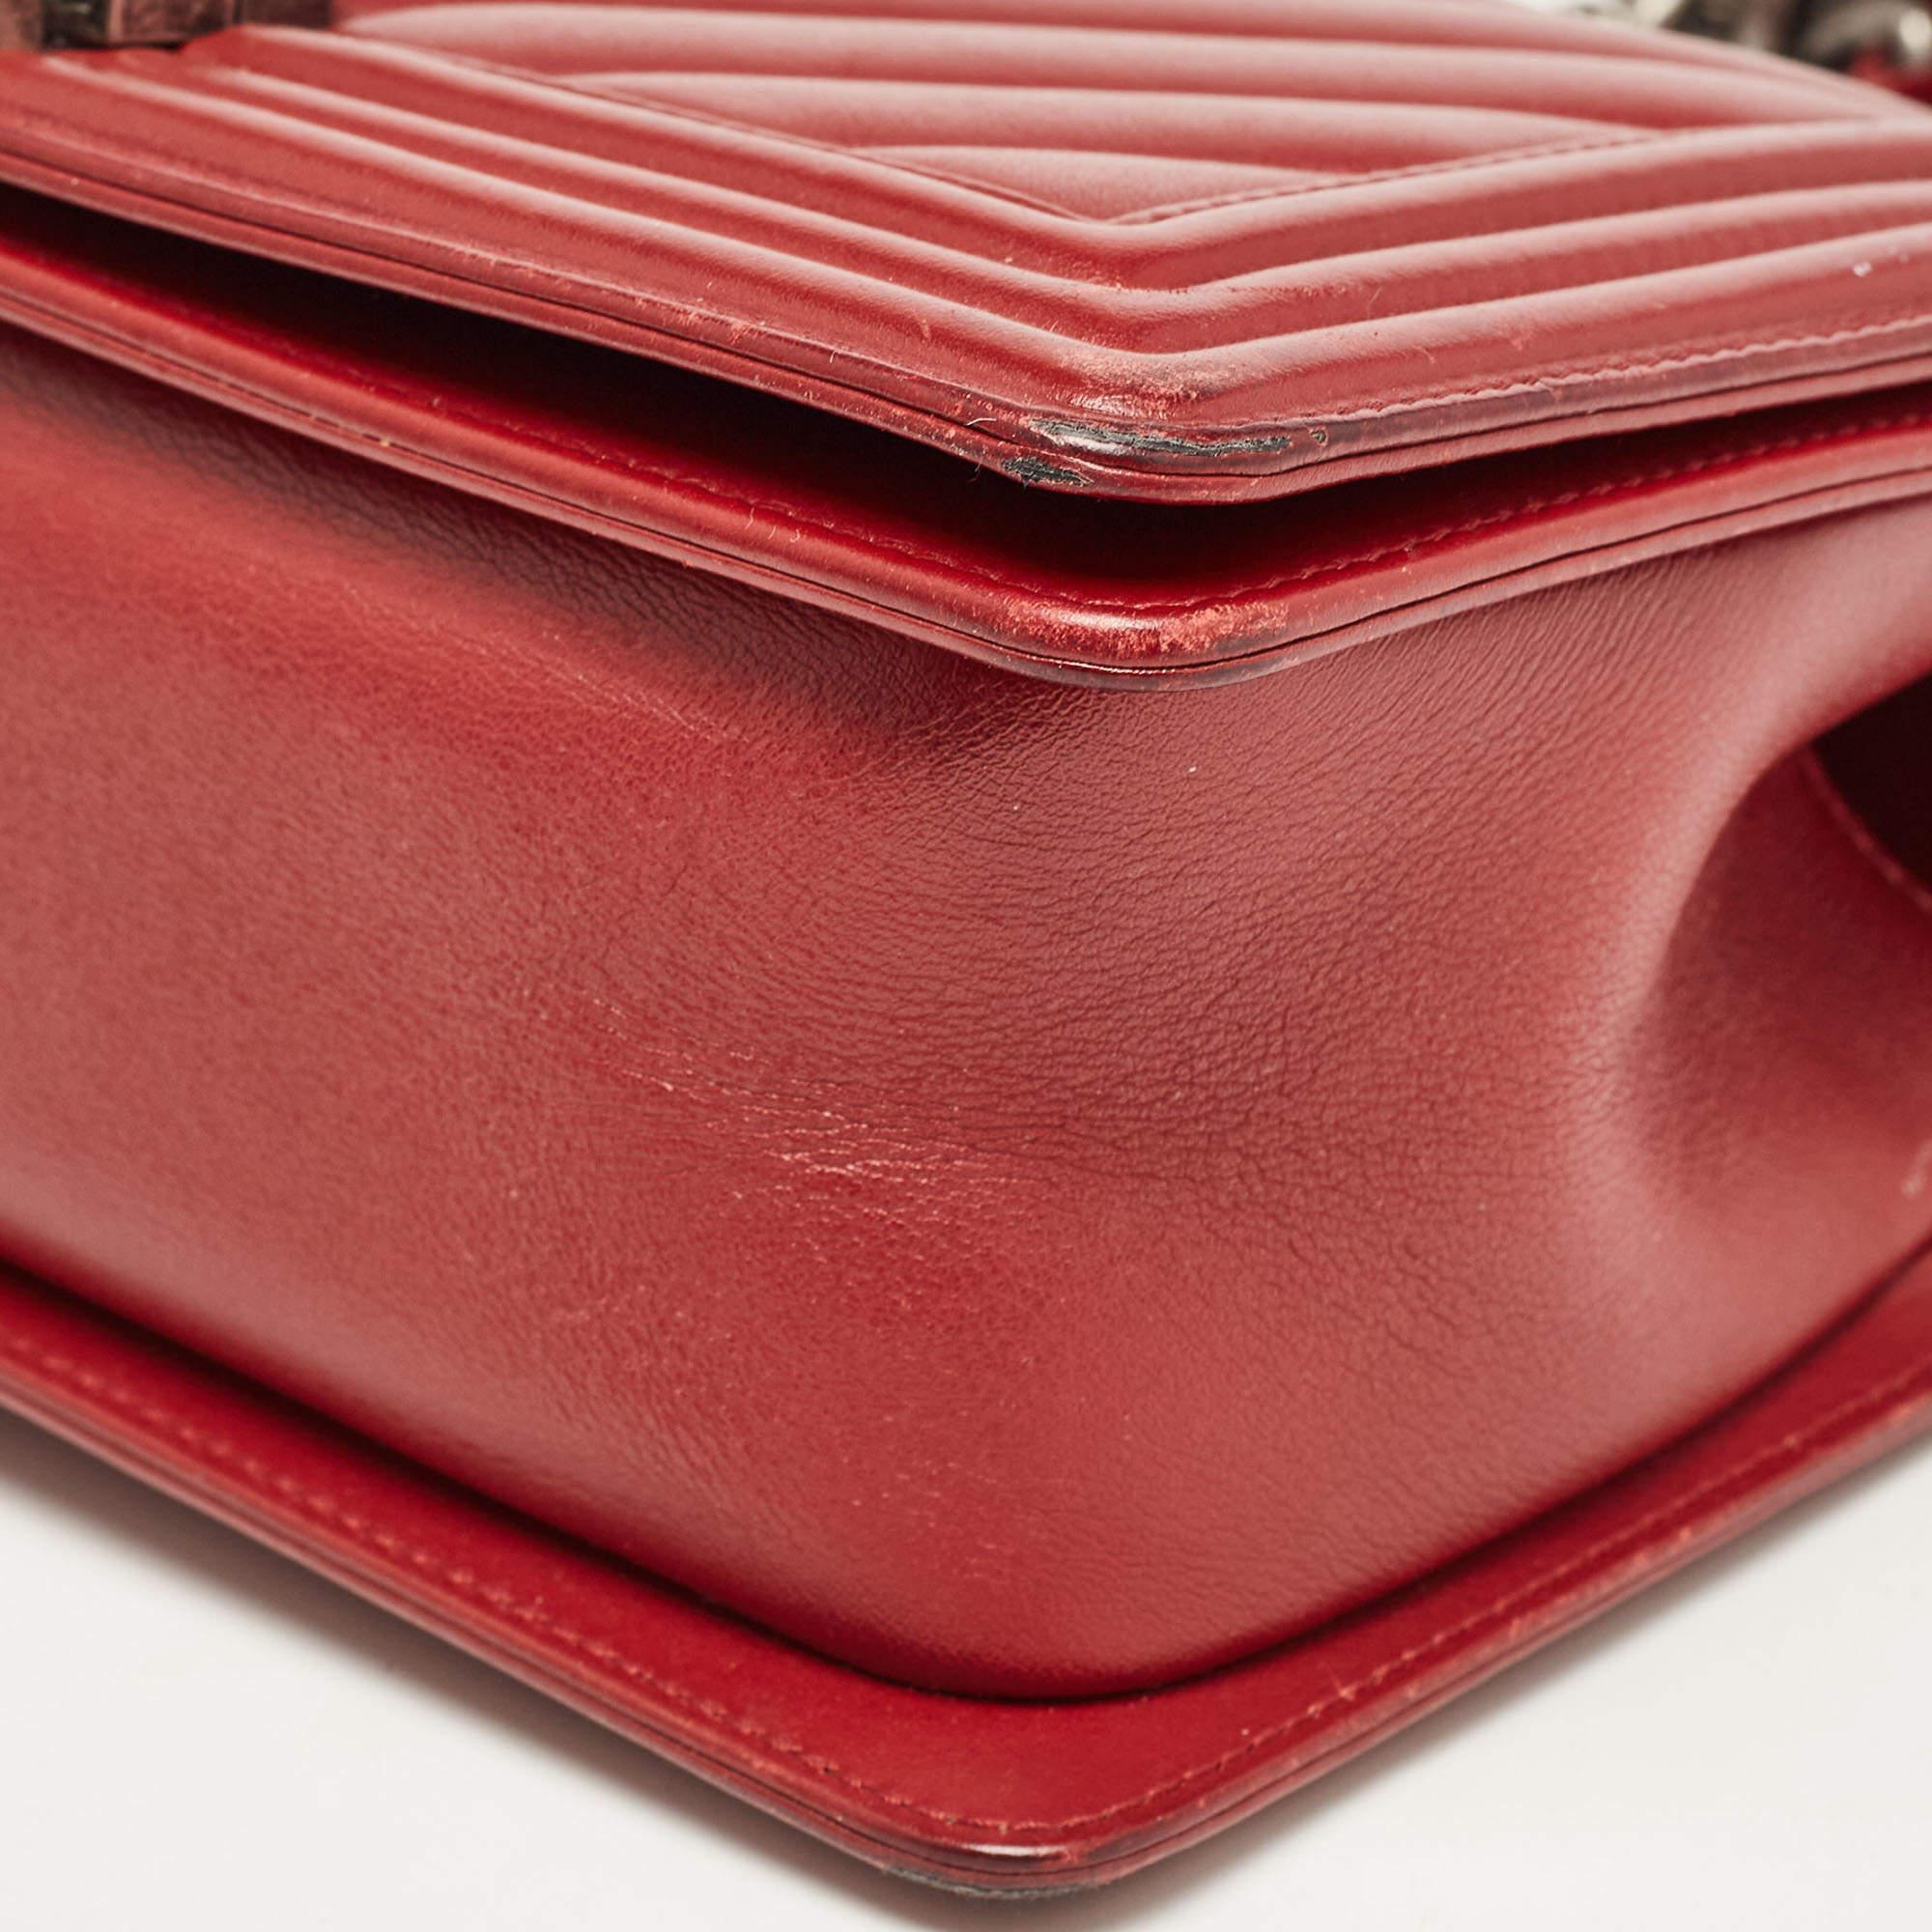 Chanel Red Chevron Leather Medium Boy Bag 3